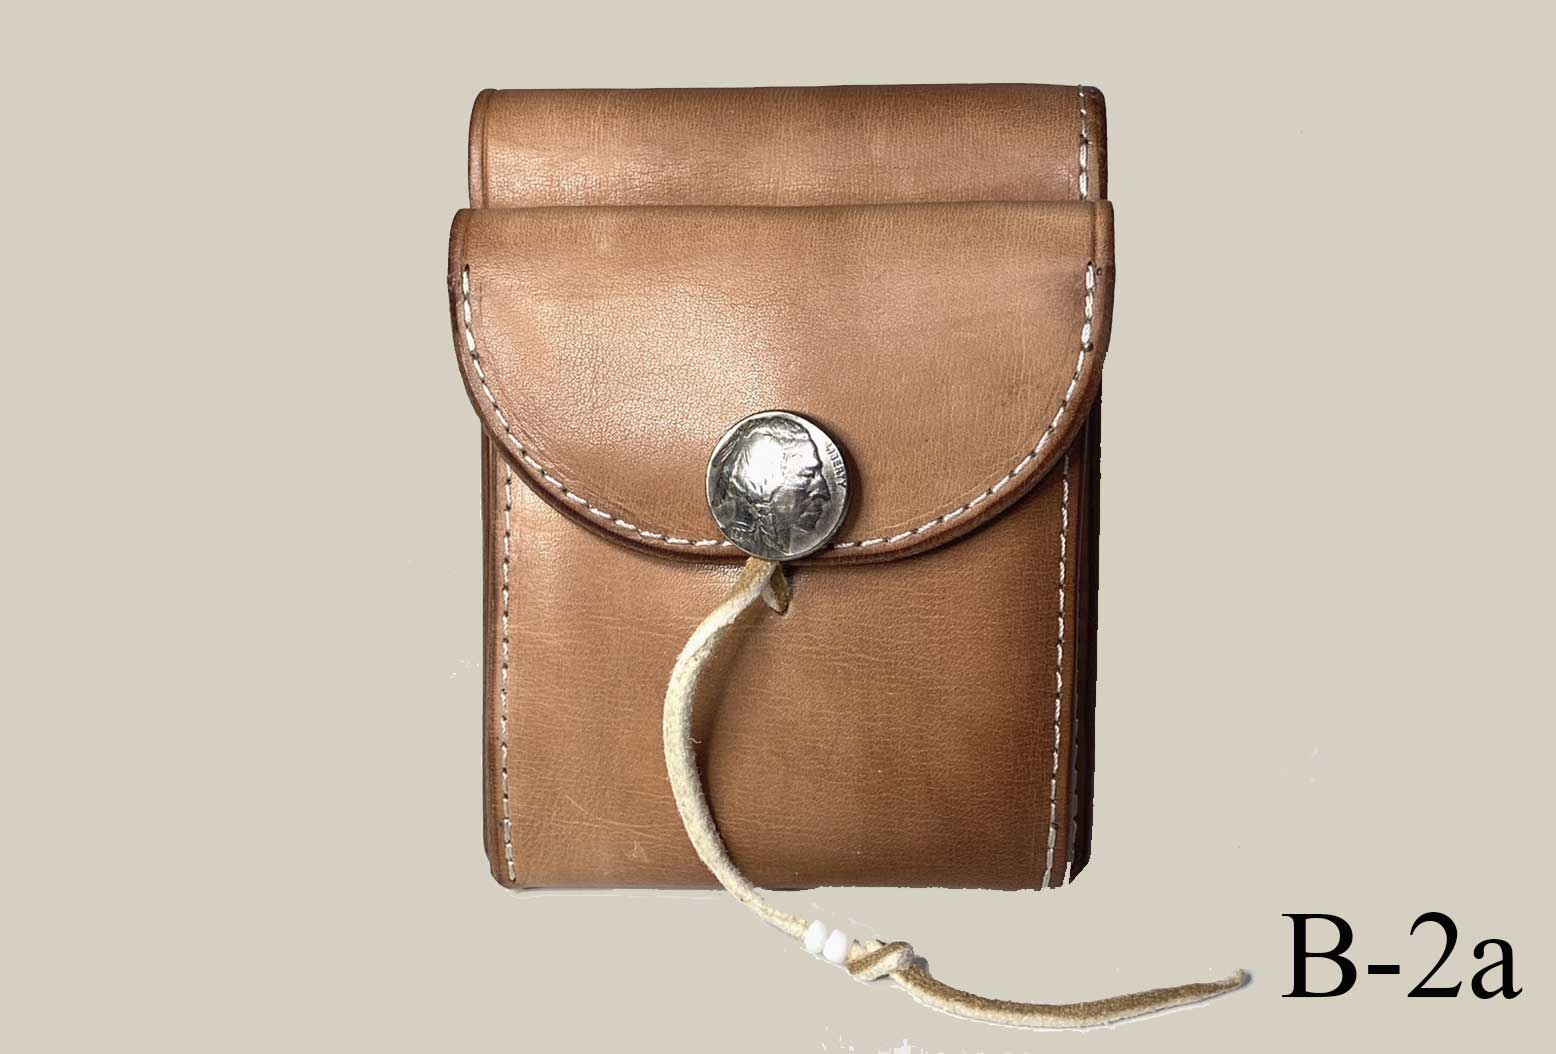 【Koudlka Leather(クーデルカ レザー)】【b-2a】ビルフォード 2つ折り財布